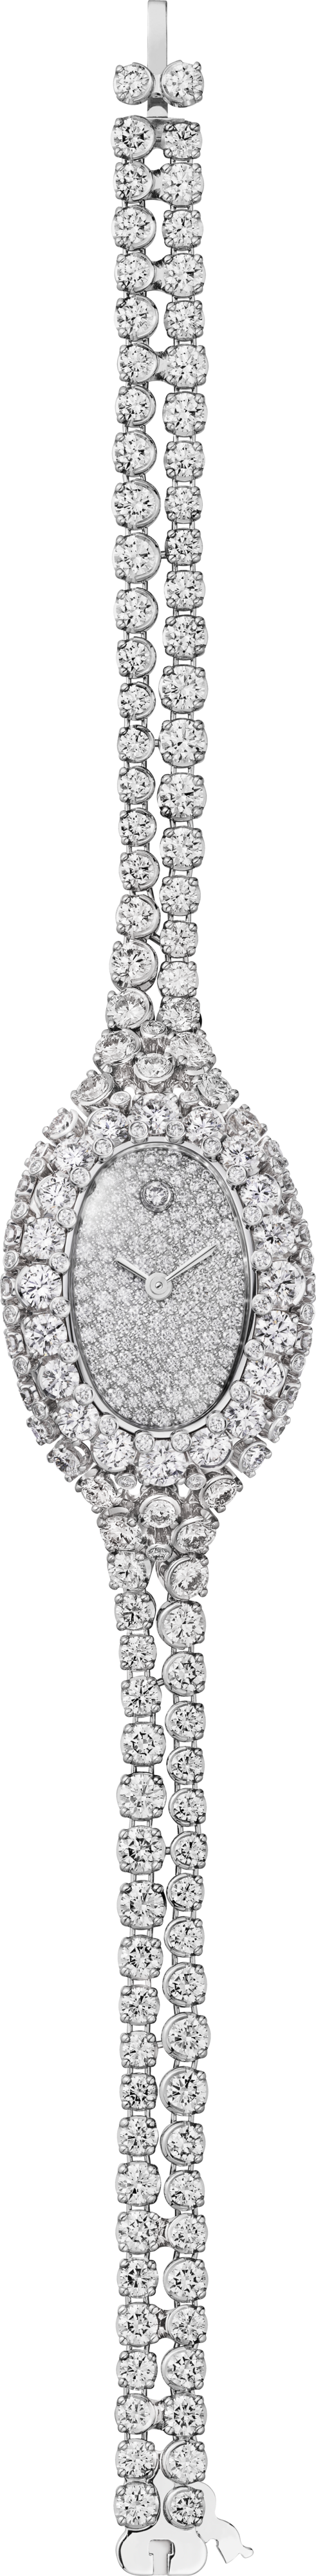 Baignoire jewellery watch Mini model, quartz movement, white gold, diamonds